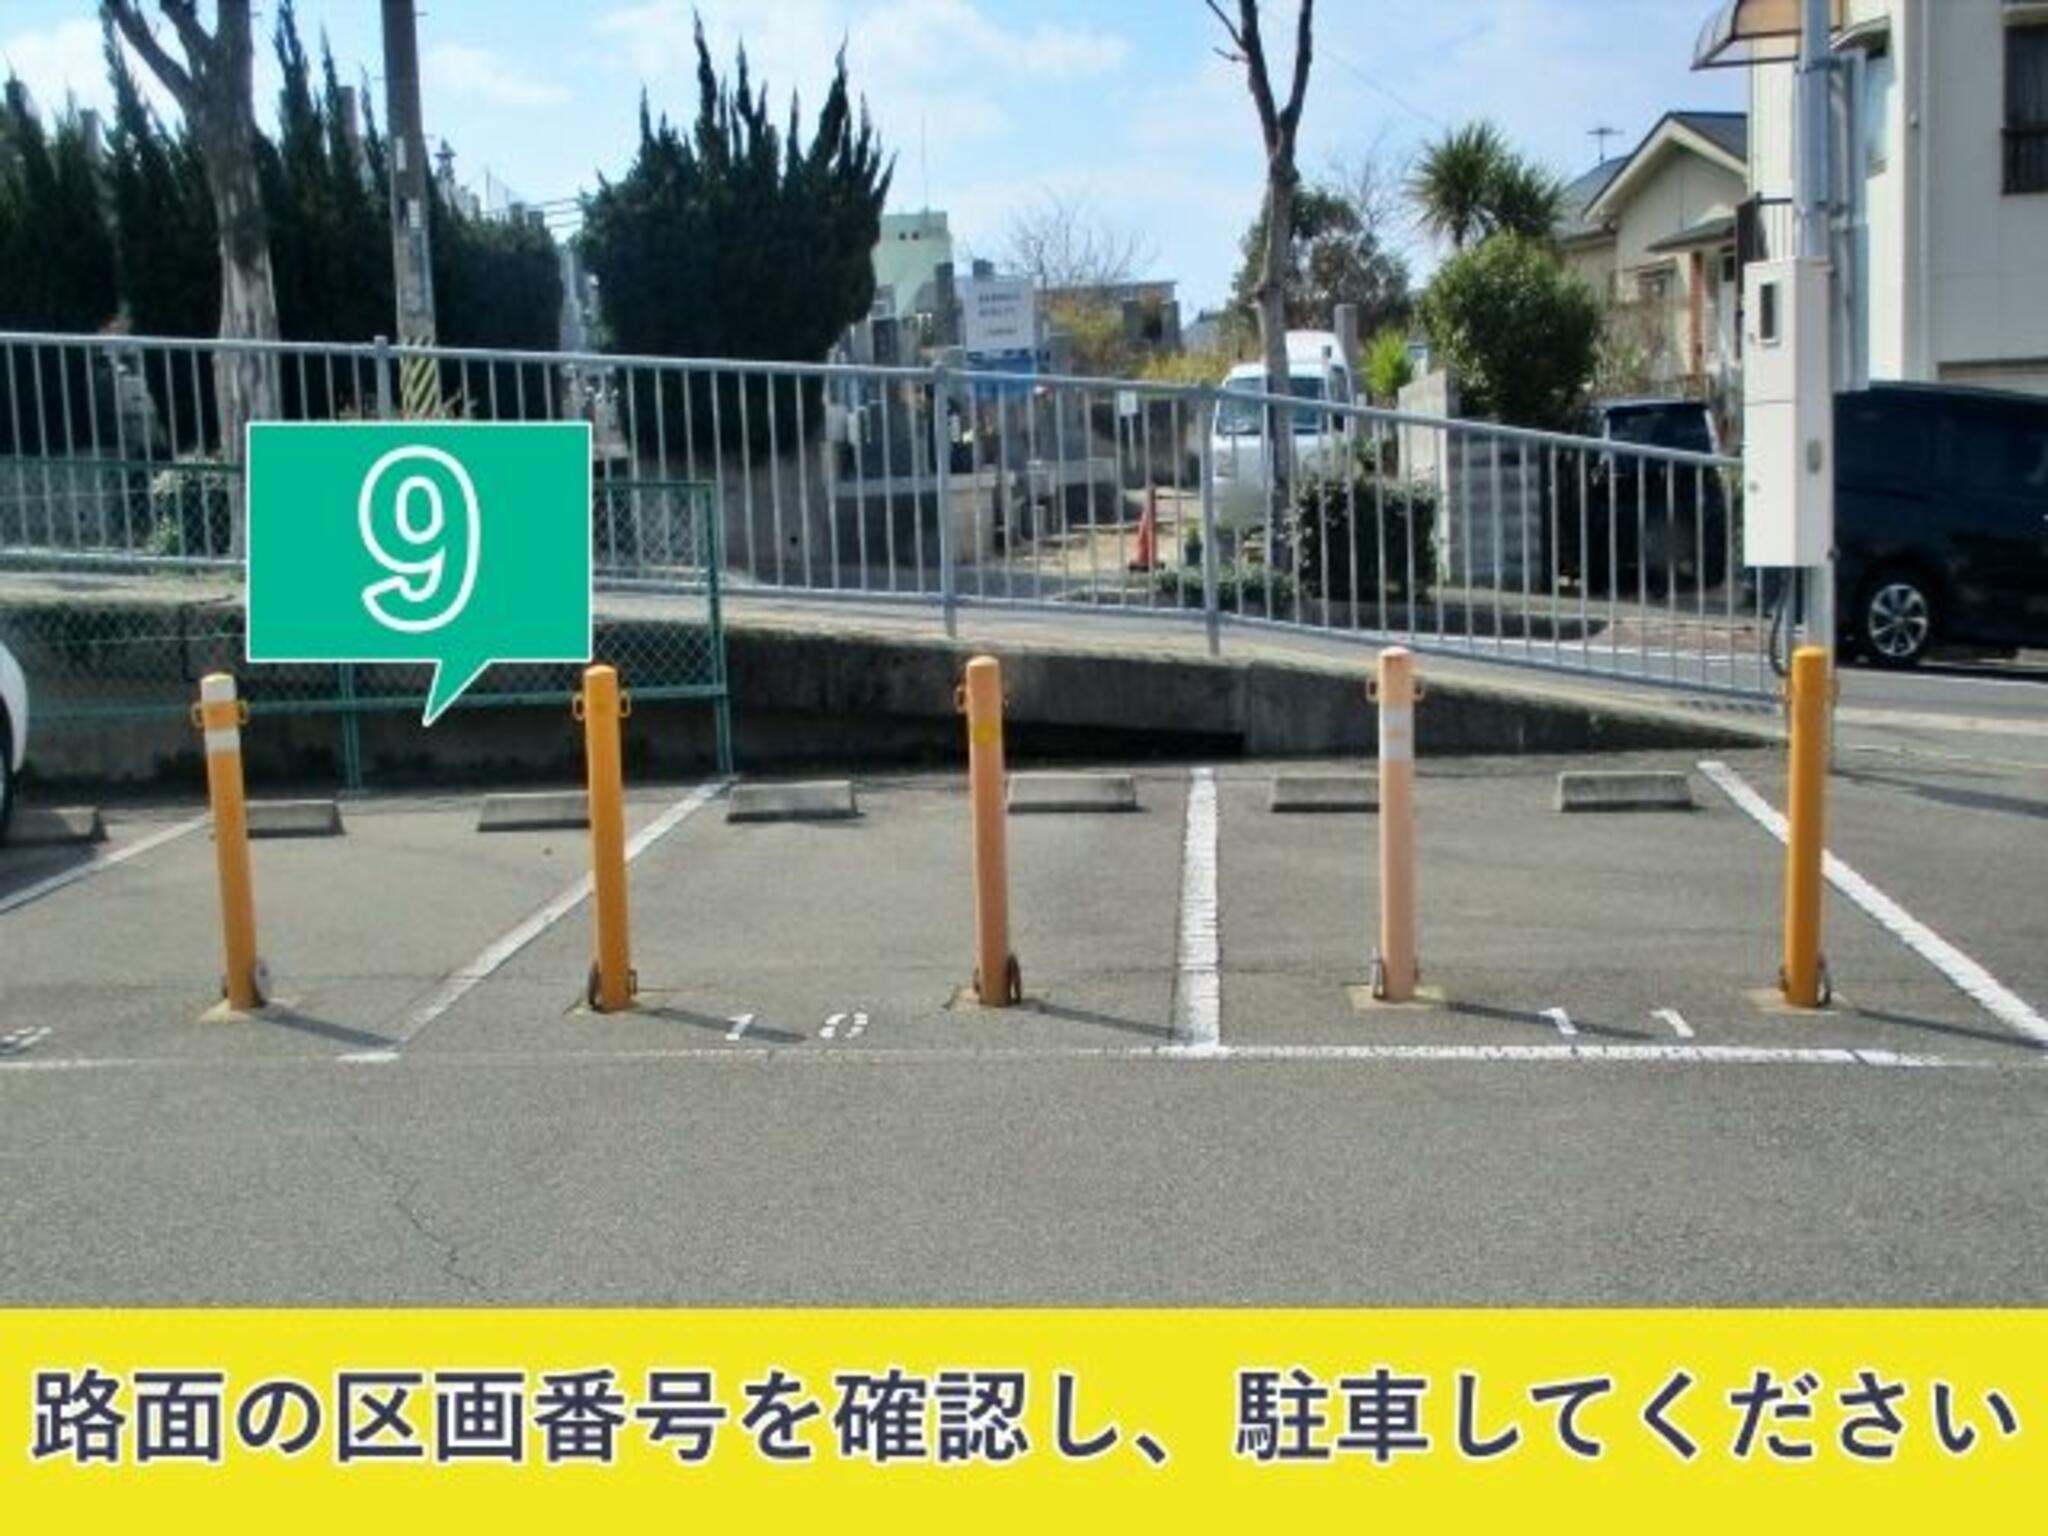 akippa駐車場:兵庫県神戸市垂水区乙木1丁目13の代表写真1